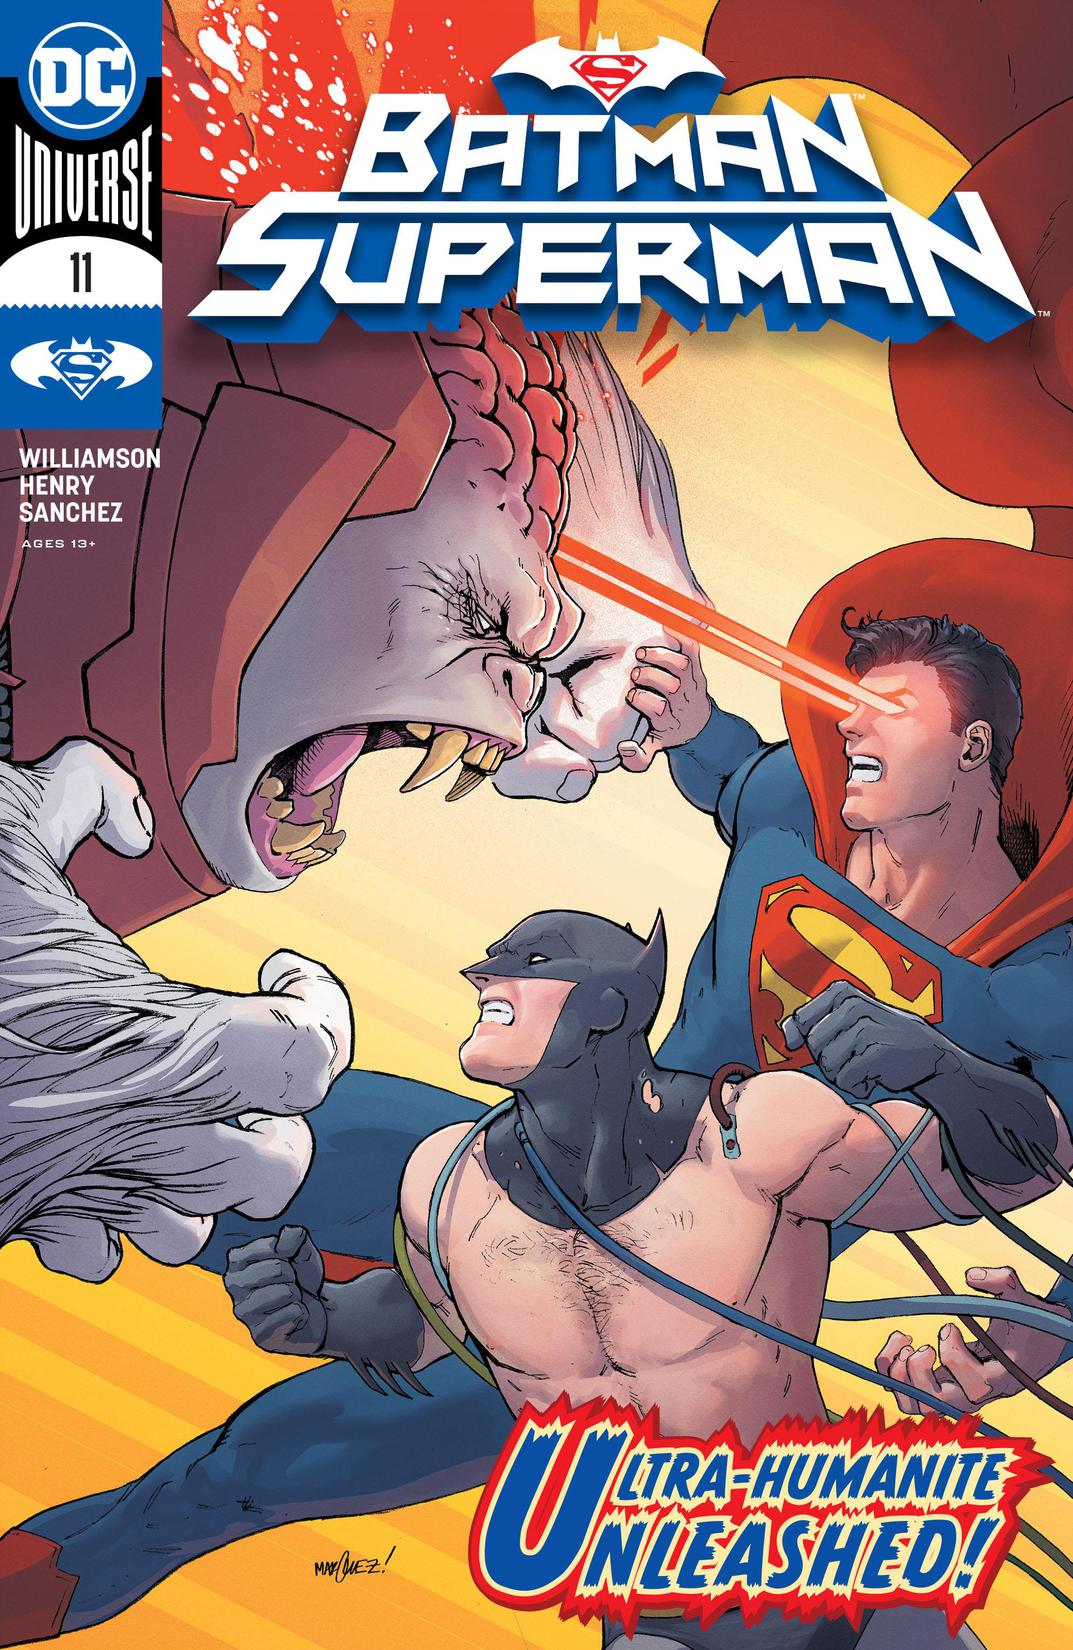 Batman/Superman (2019-) #11 preview images